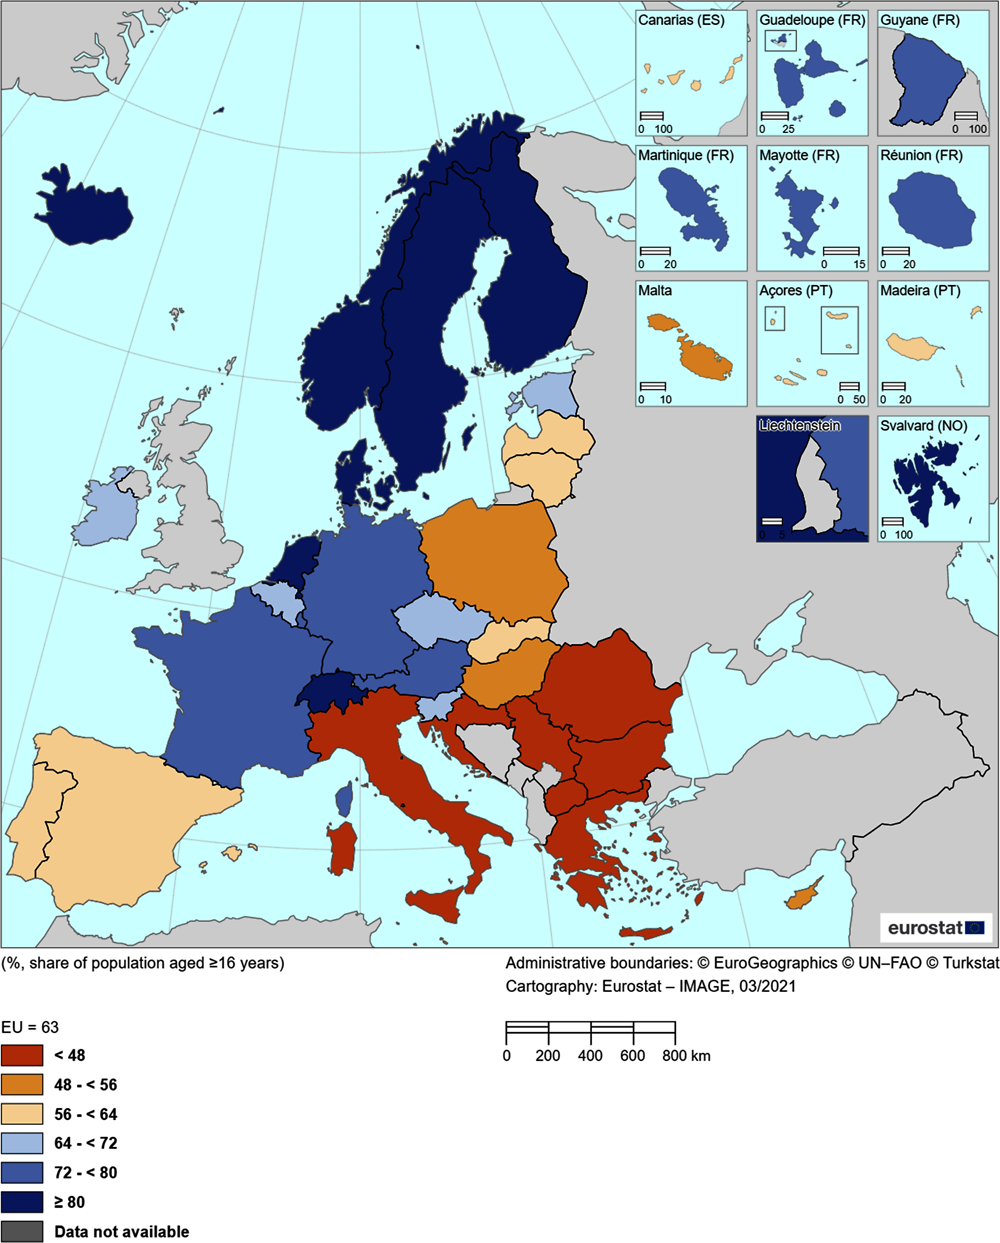 Figure 2.2. Passive cultural participation across Europe, 2015